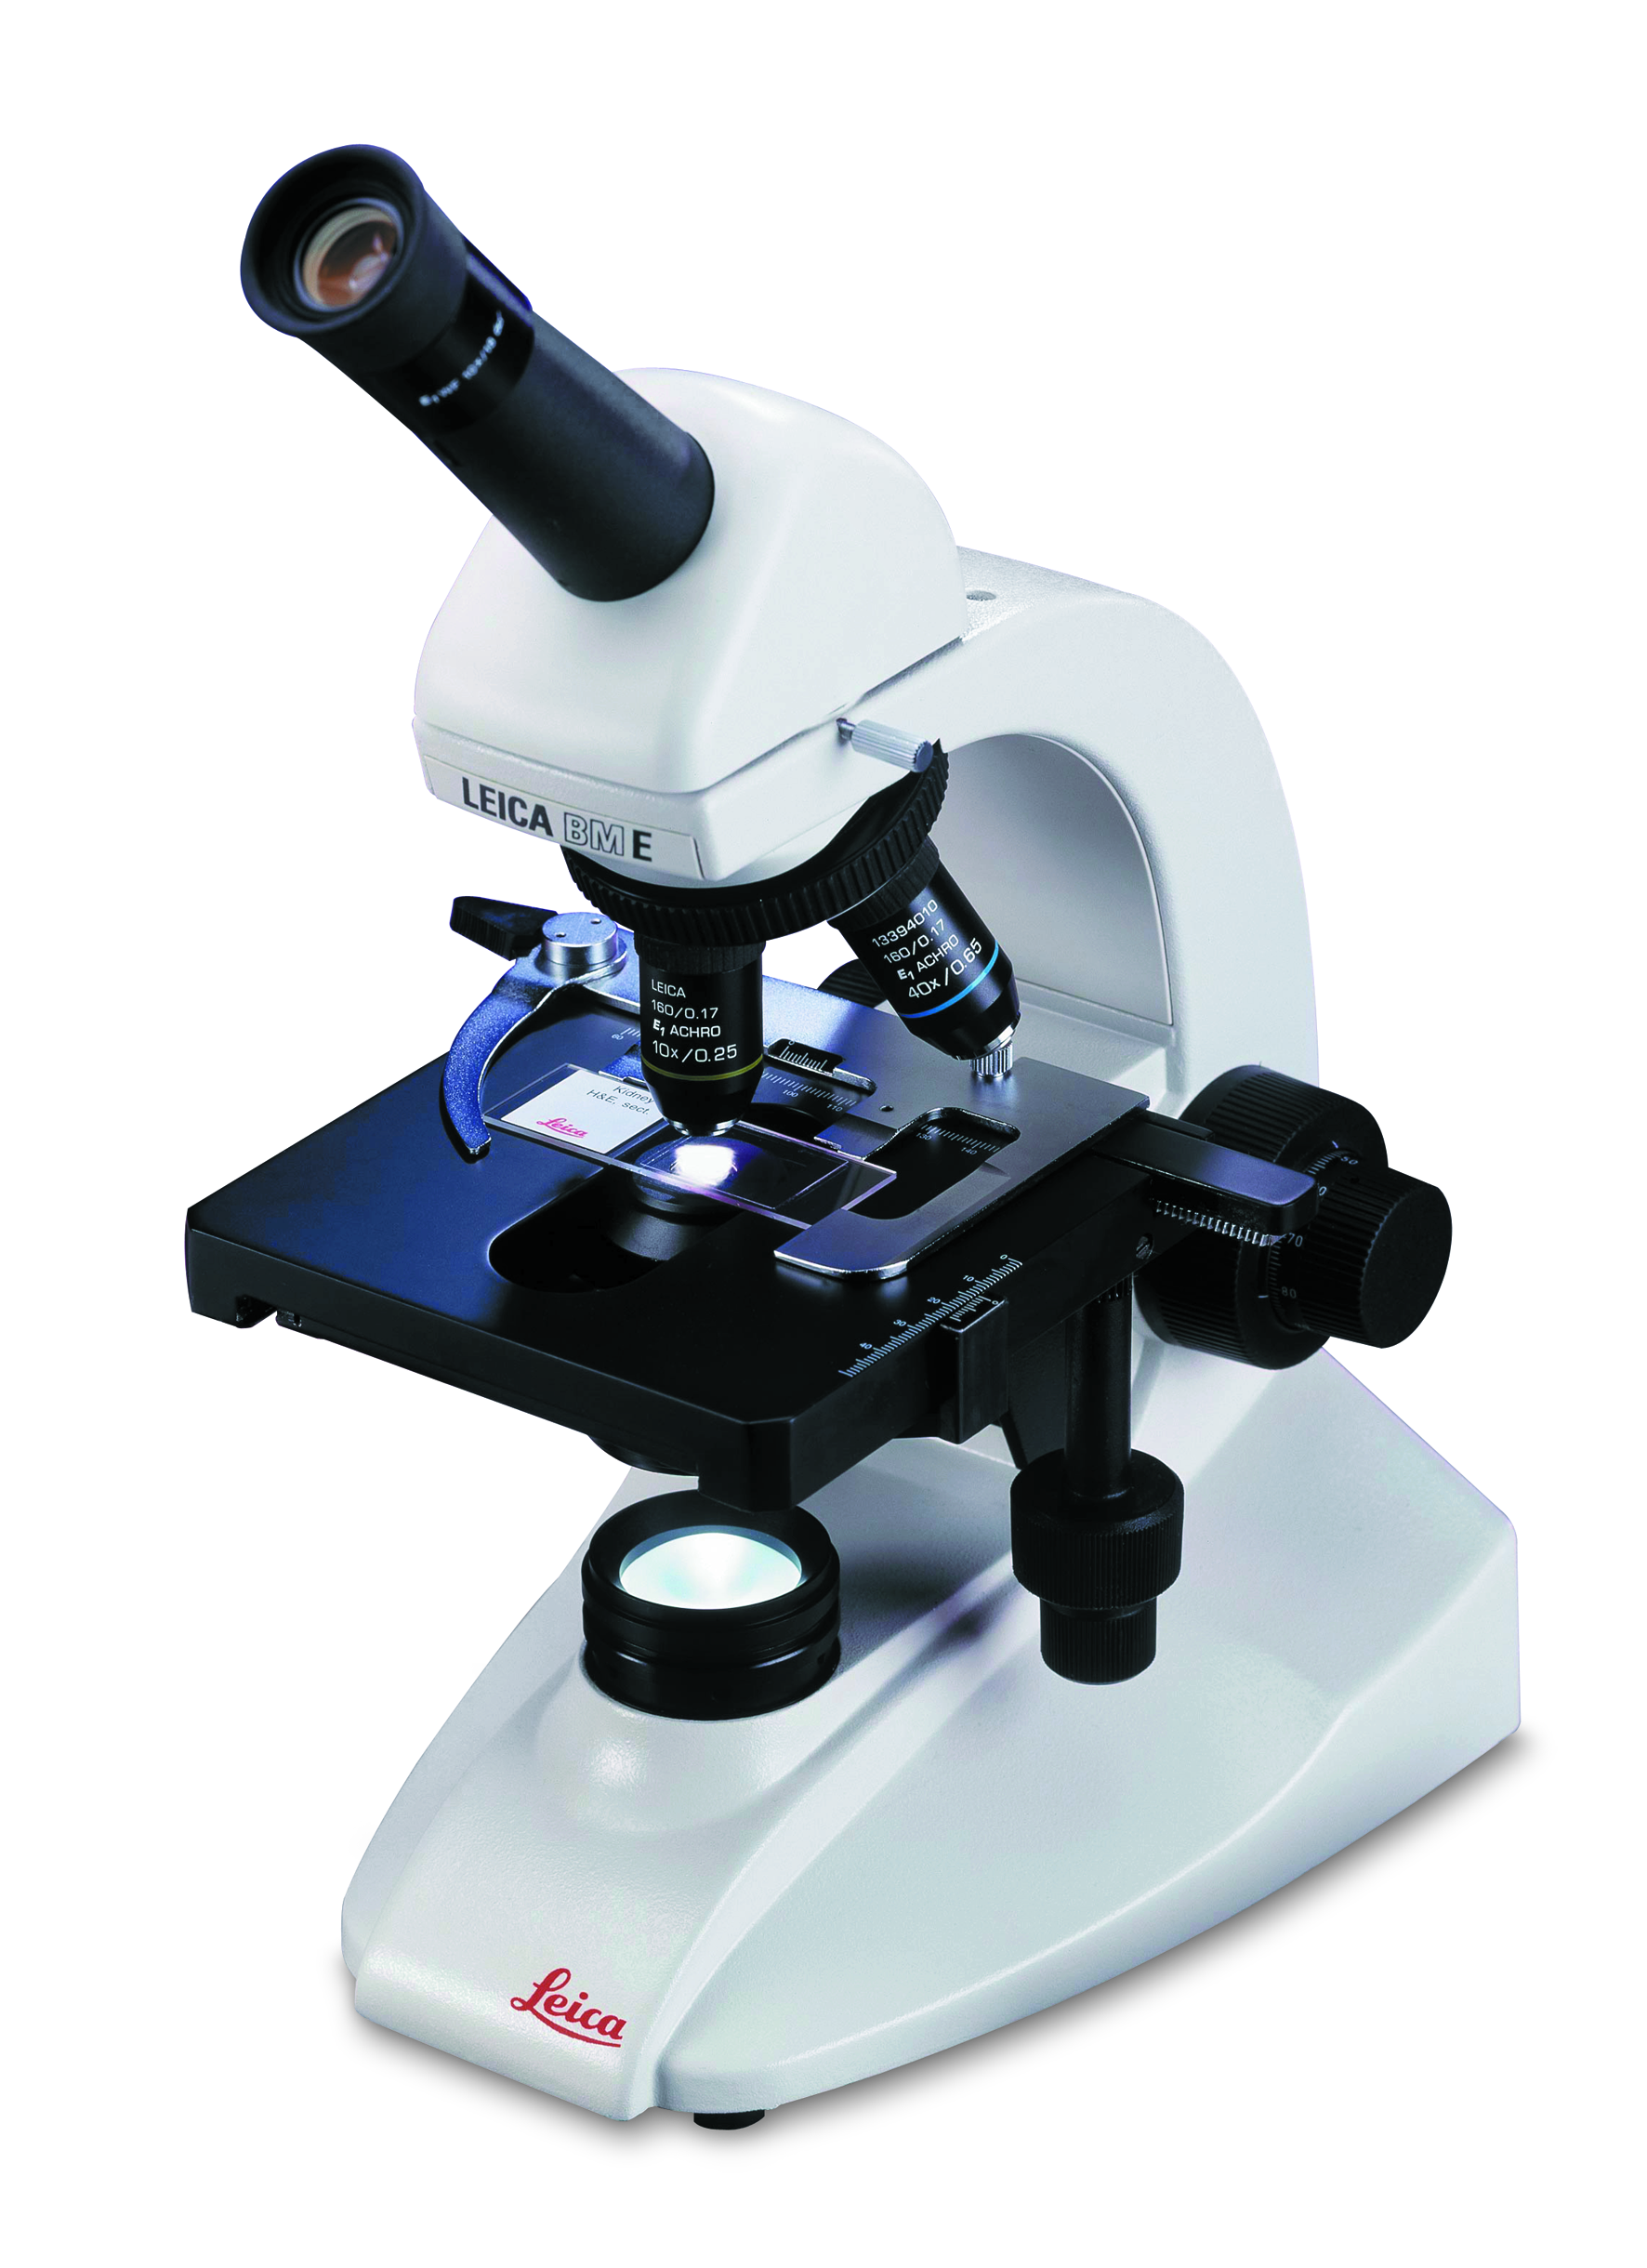 Son optique haute qualité et sa durabilité font du Leica BM E le meilleur microscope éducatif de sa catégorie.